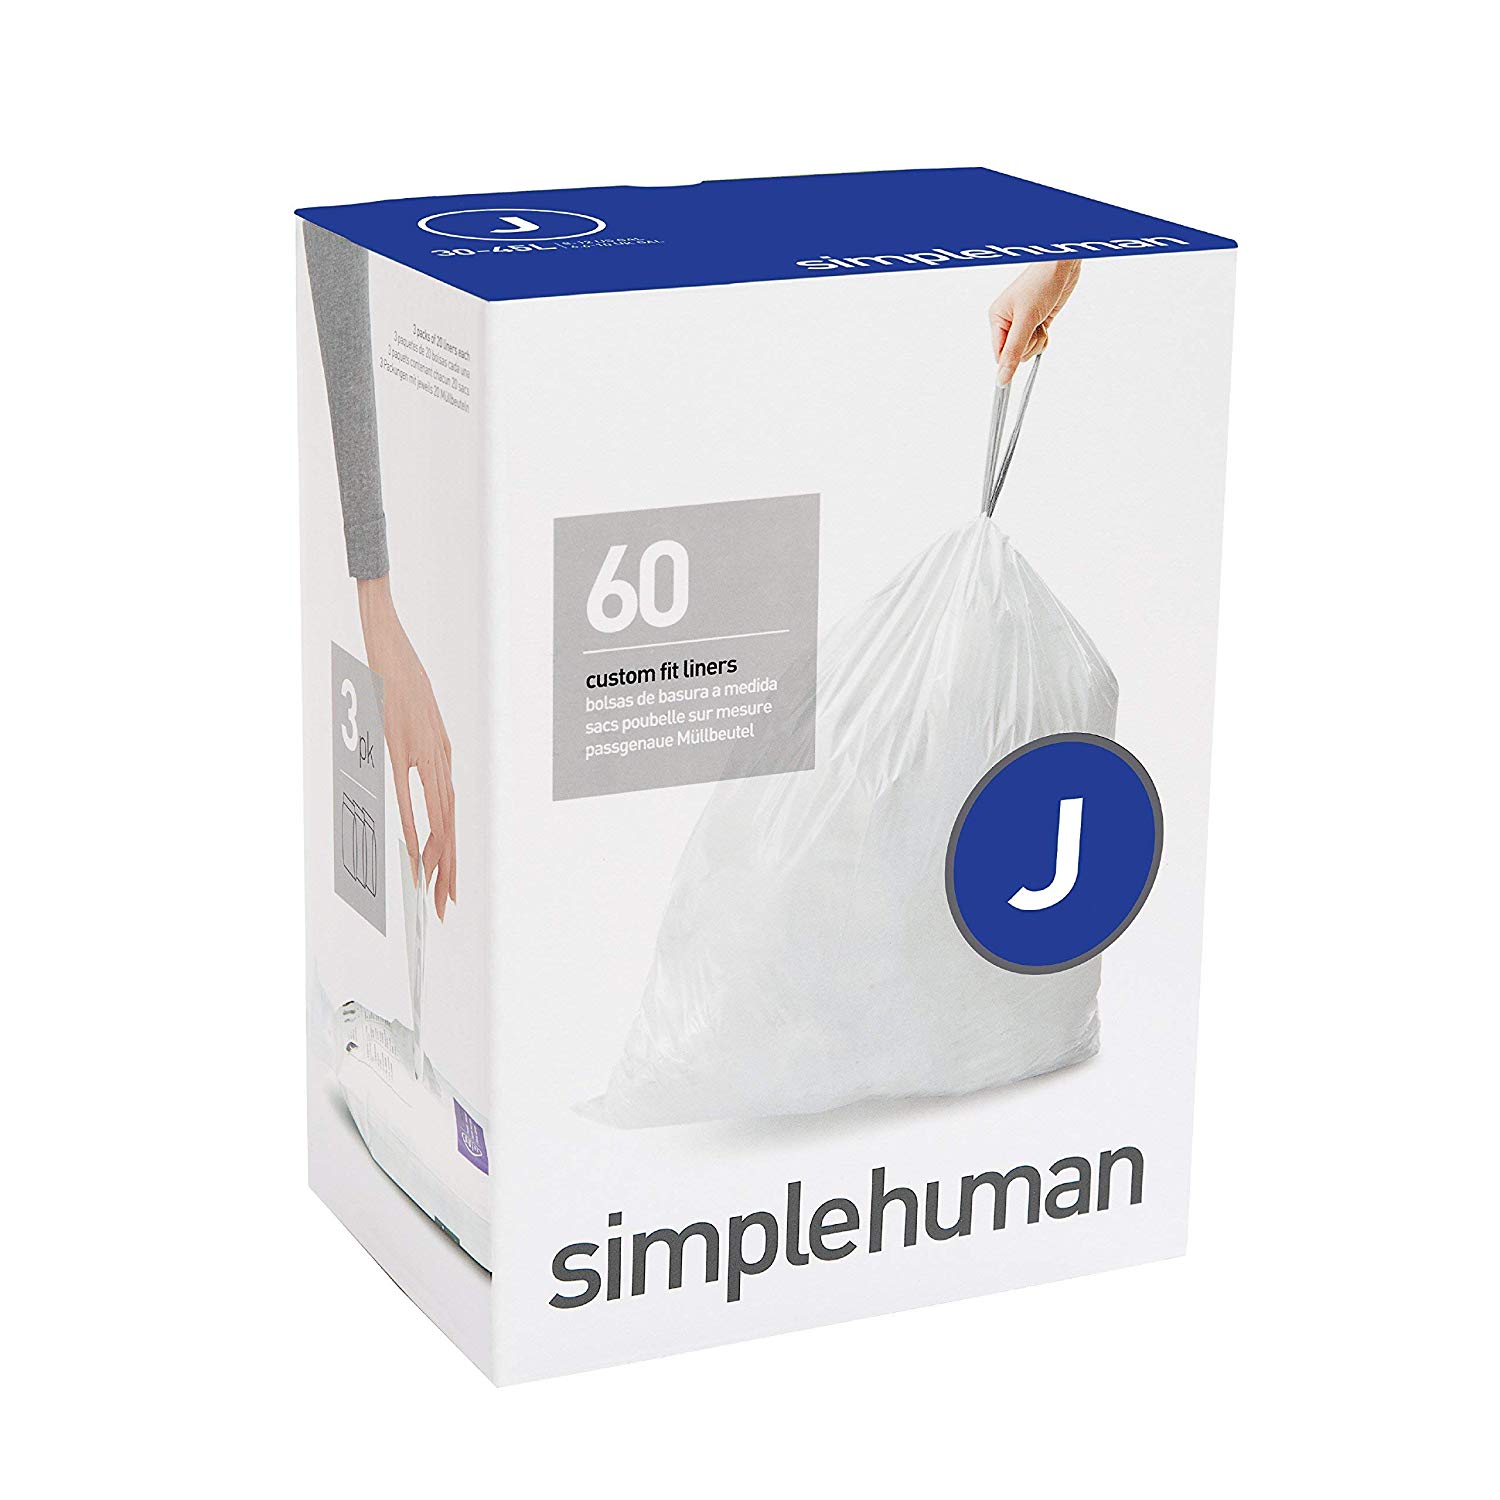 מארז 360 שקיות יעודיות לפחים (J) דגם Simplehuman - CW0259 - סימפליומן